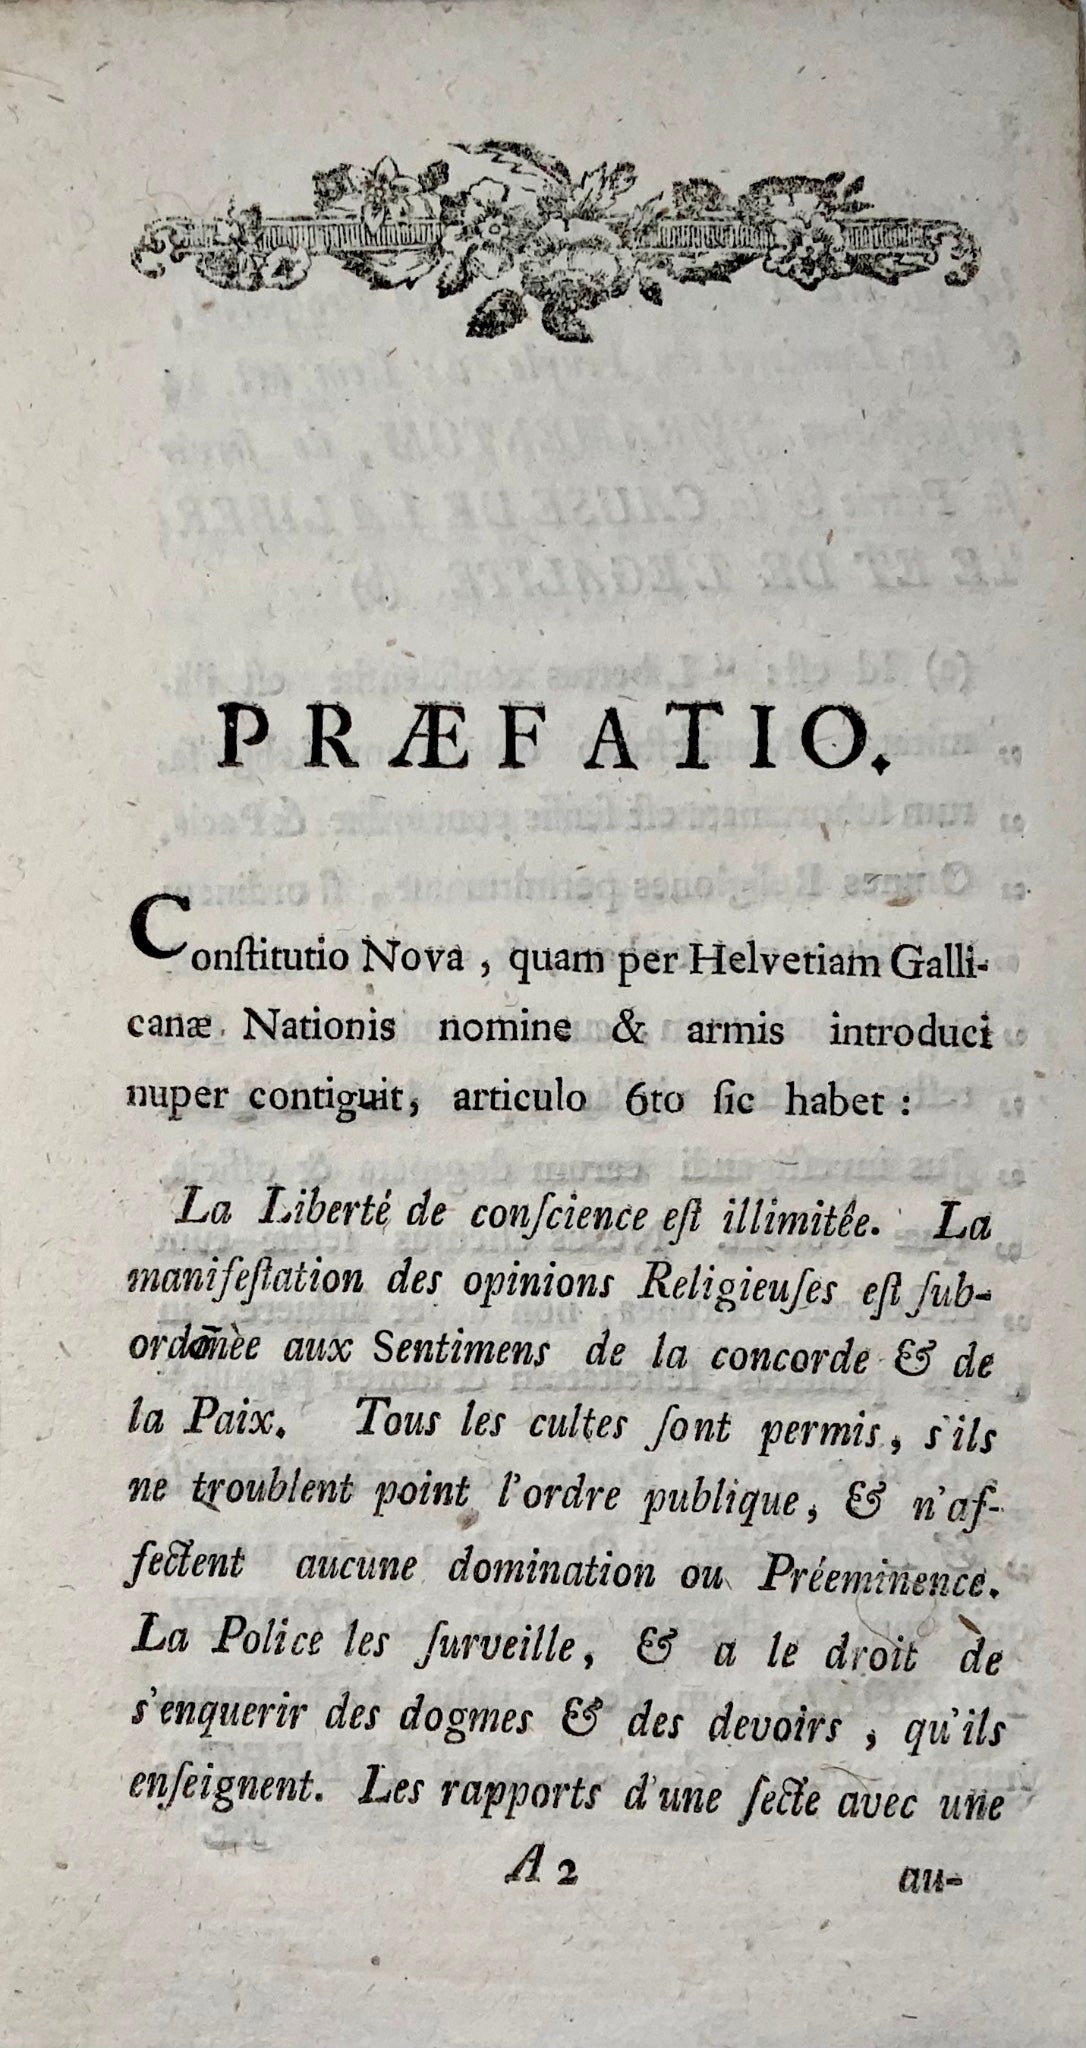 1798 Riflessioni sulla Costituzione della Svizzera, Repubblica Elvetica, opuscolo